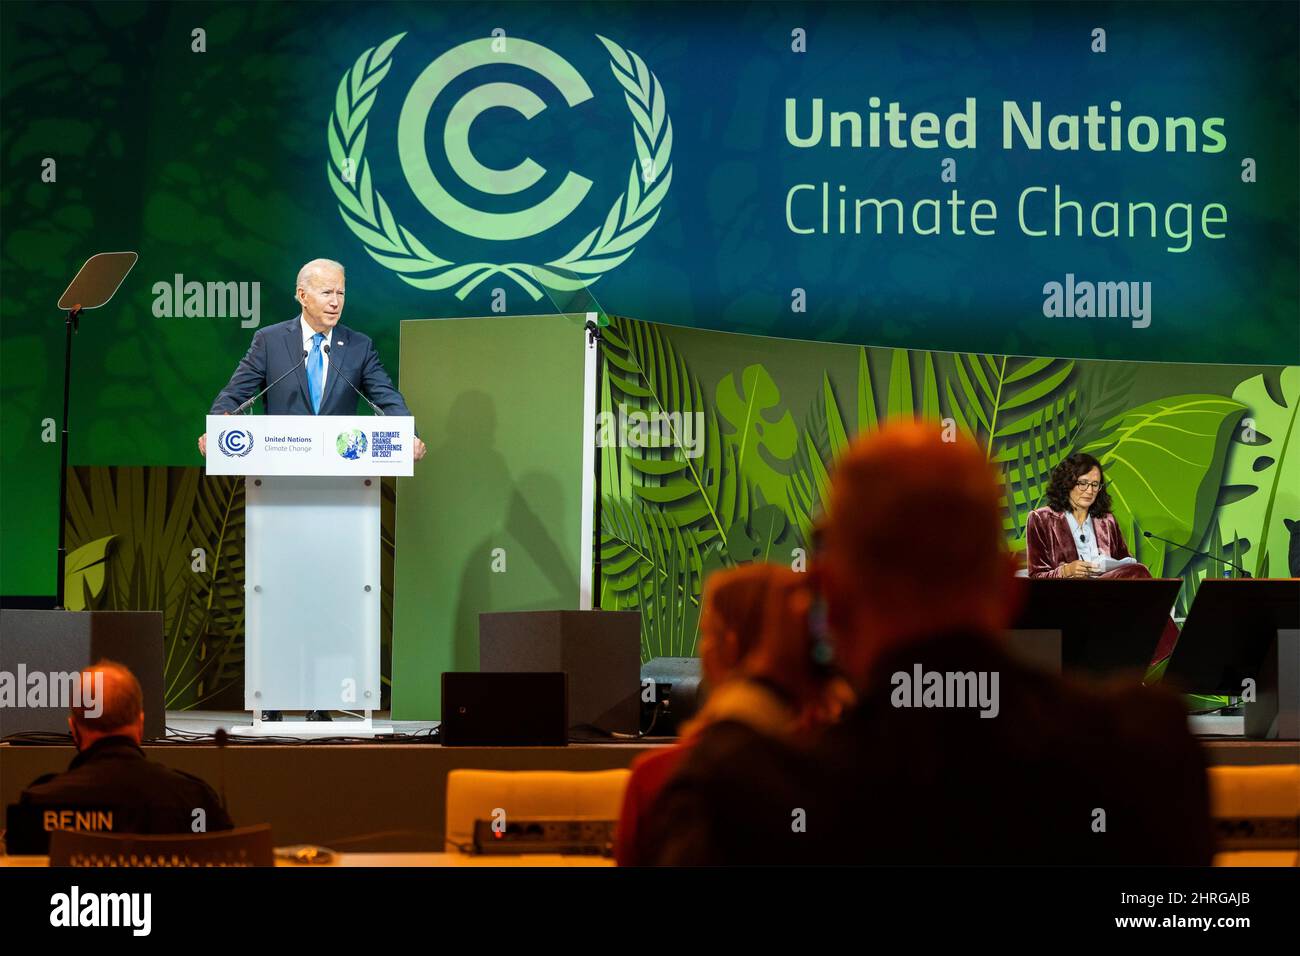 Joe Biden, Presidente de los Estados Unidos, pronuncia un discurso sobre la Acción sobre Bosques y Uso de la Tierra en la Conferencia de las Naciones Unidas sobre el Cambio Climático COP26 con líderes mundiales en el Scottish Event Campus, 2 de noviembre de 2021 en Glasgow, Escocia. Foto de stock